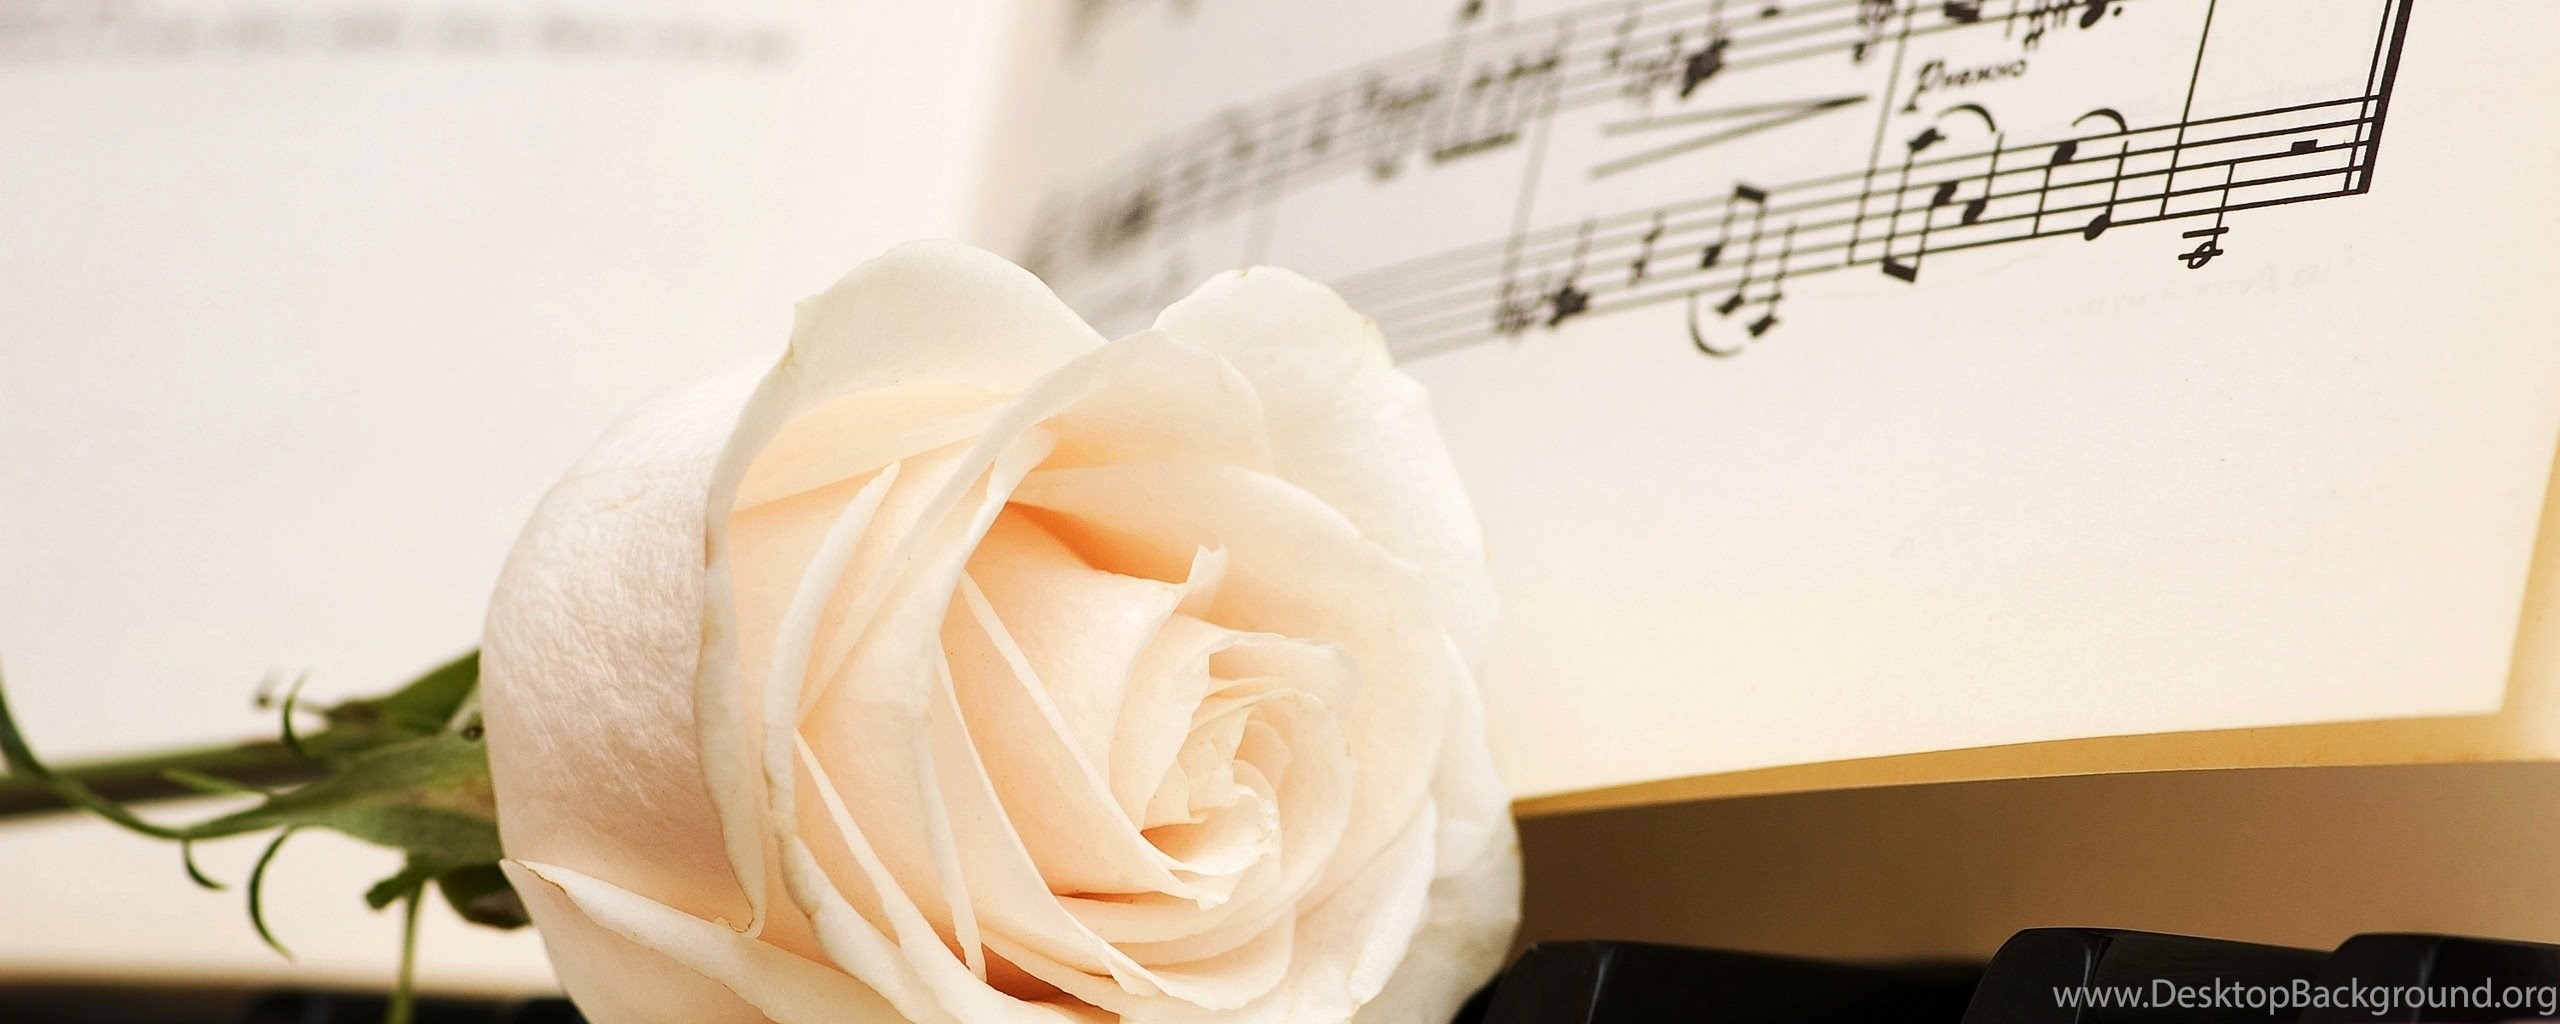 Ты так проникновенно исполняешь романсы. Букет Ноты. Ноты и цветы. Цветы на пианино. Красивый фон с нотами и цветами.